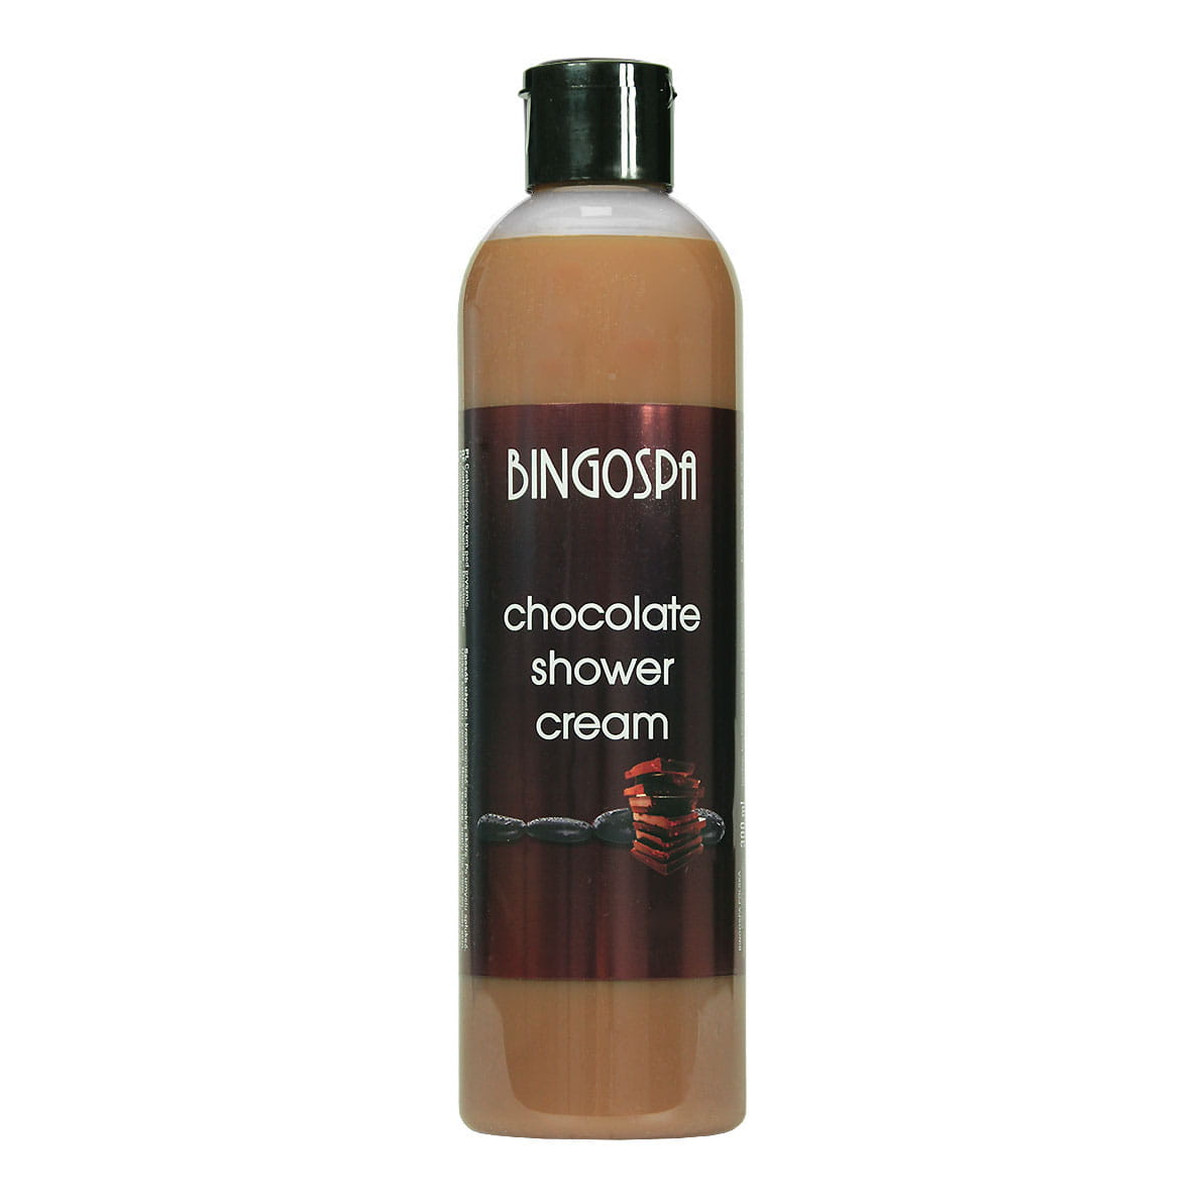 BingoSpa Czekoladowy krem pod prysznic Chocolate shower cream 300ml